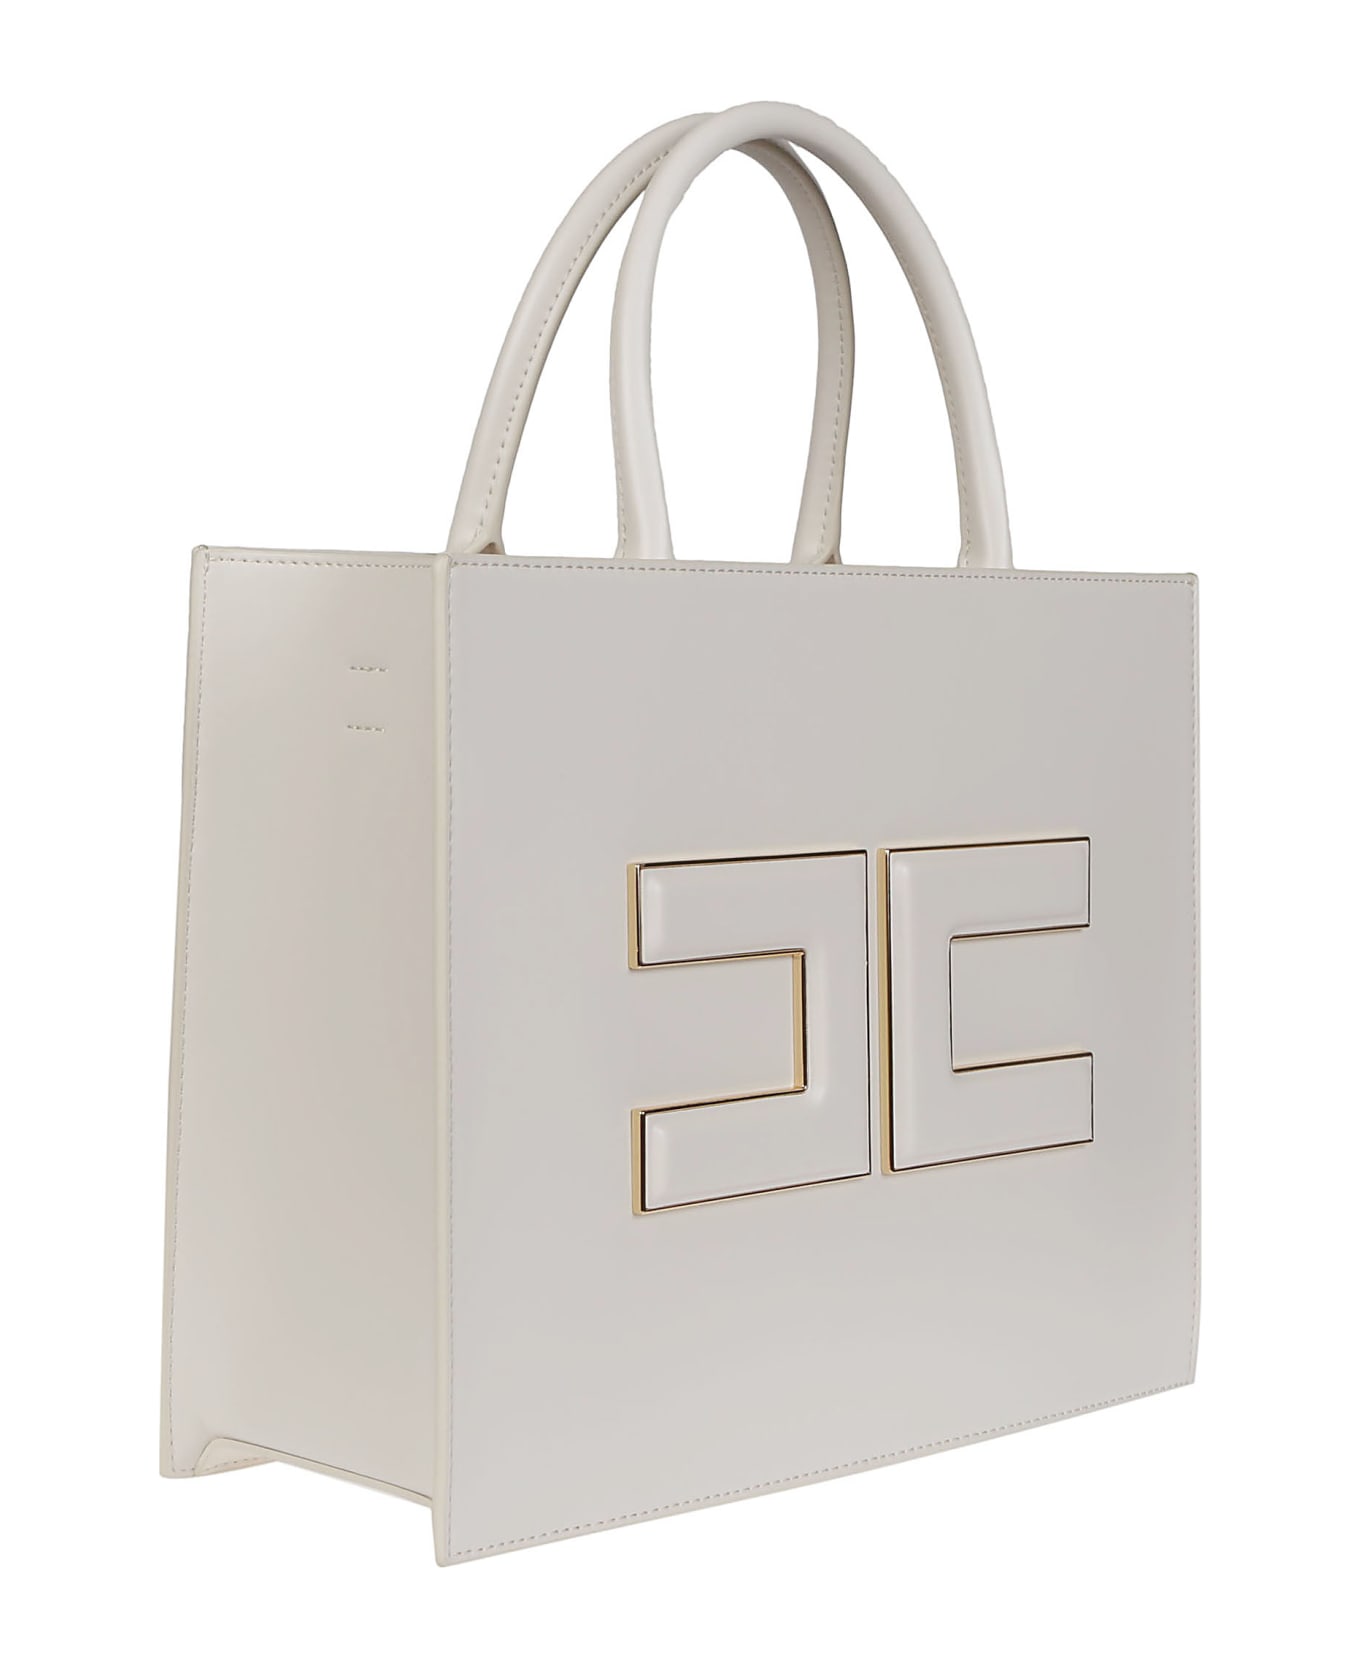 Elisabetta Franchi Medium Shopping Bag - Burro トートバッグ